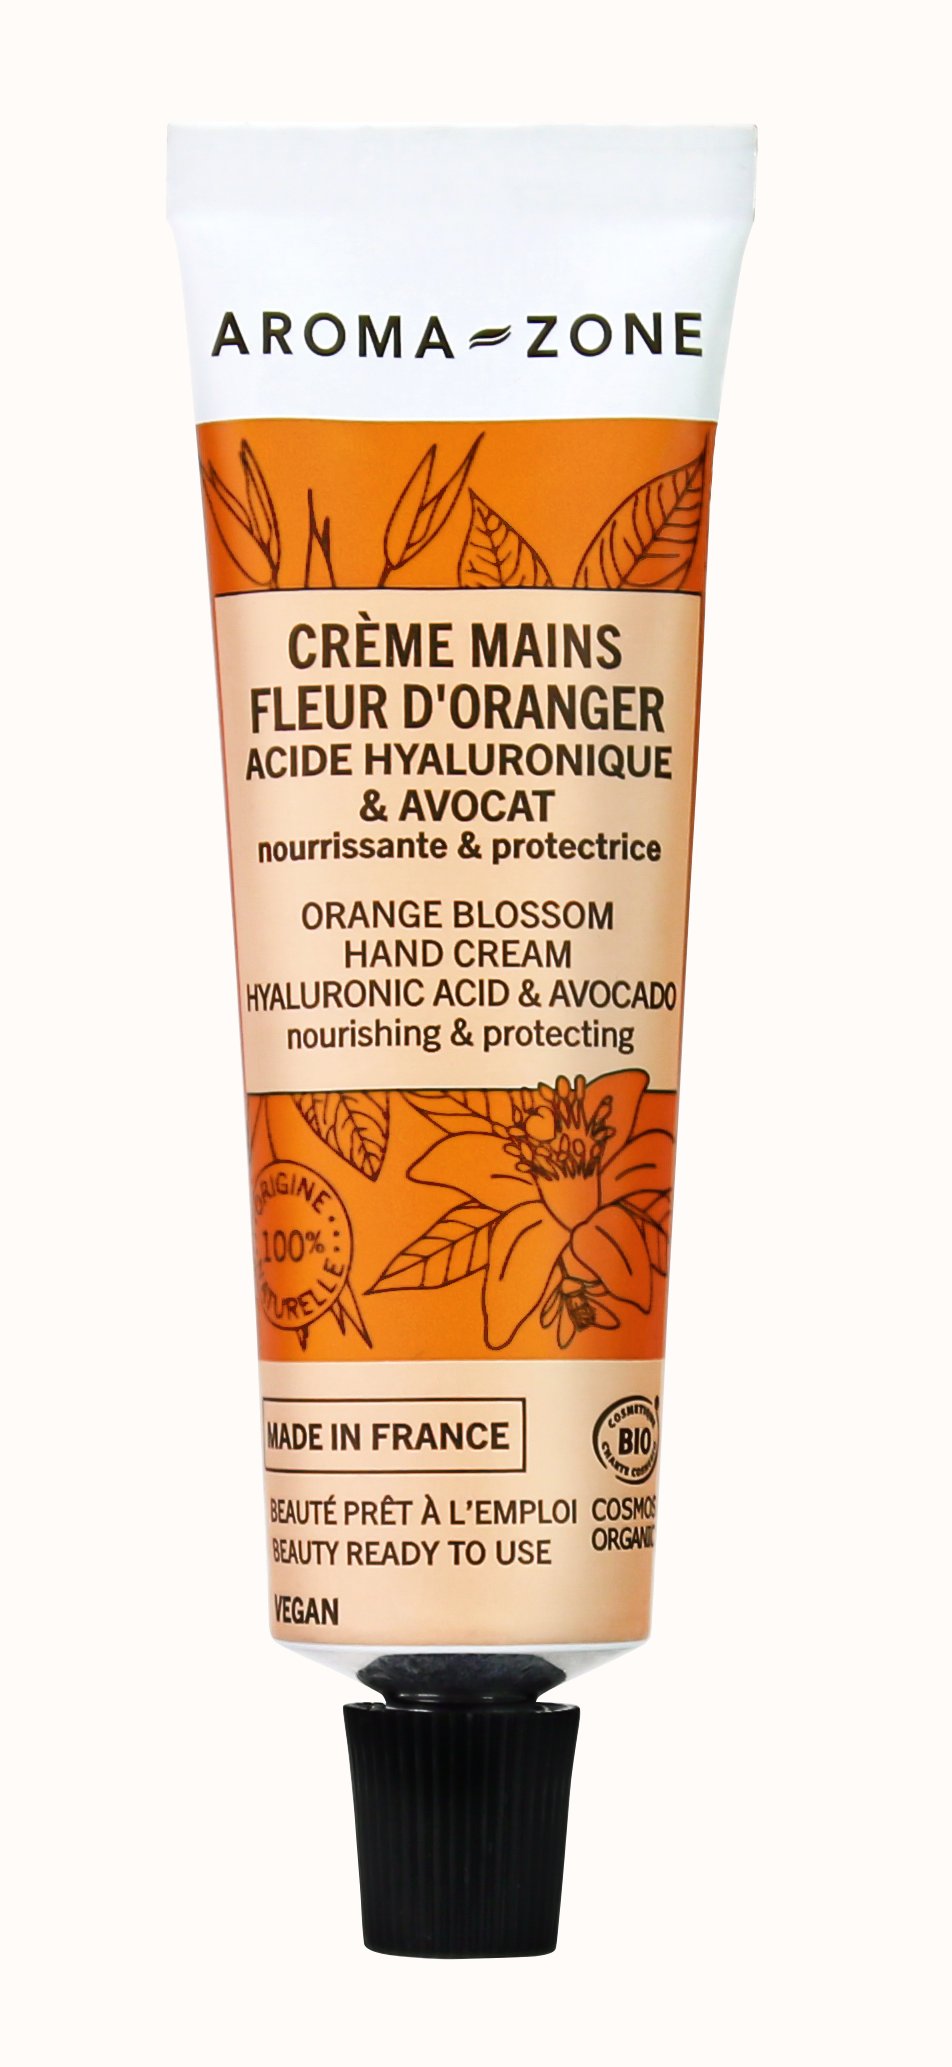 Creme-mains Fleur-d-Oranger-Acide-Hyaluronique-et-Avocat opt